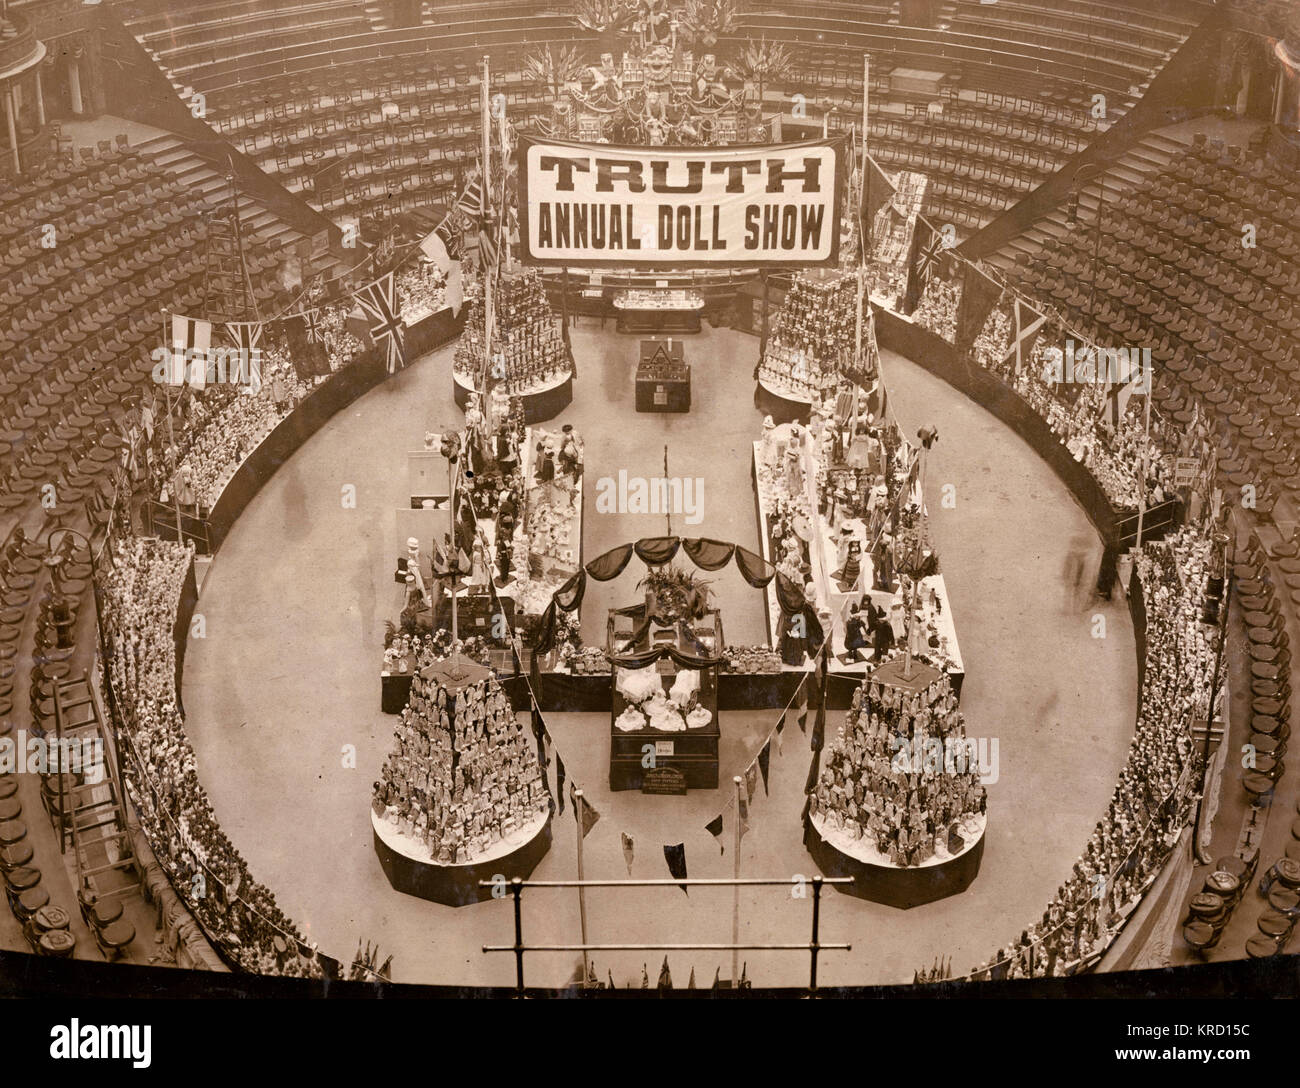 L'arena della Royal Albert Hall di Londra con un display di grandi dimensioni di bambole con sedi vuote a tutto tondo. Sopra l'arena è un banner di proclamare la verità bambola annuale mostra. Data: circa 1909 Foto Stock